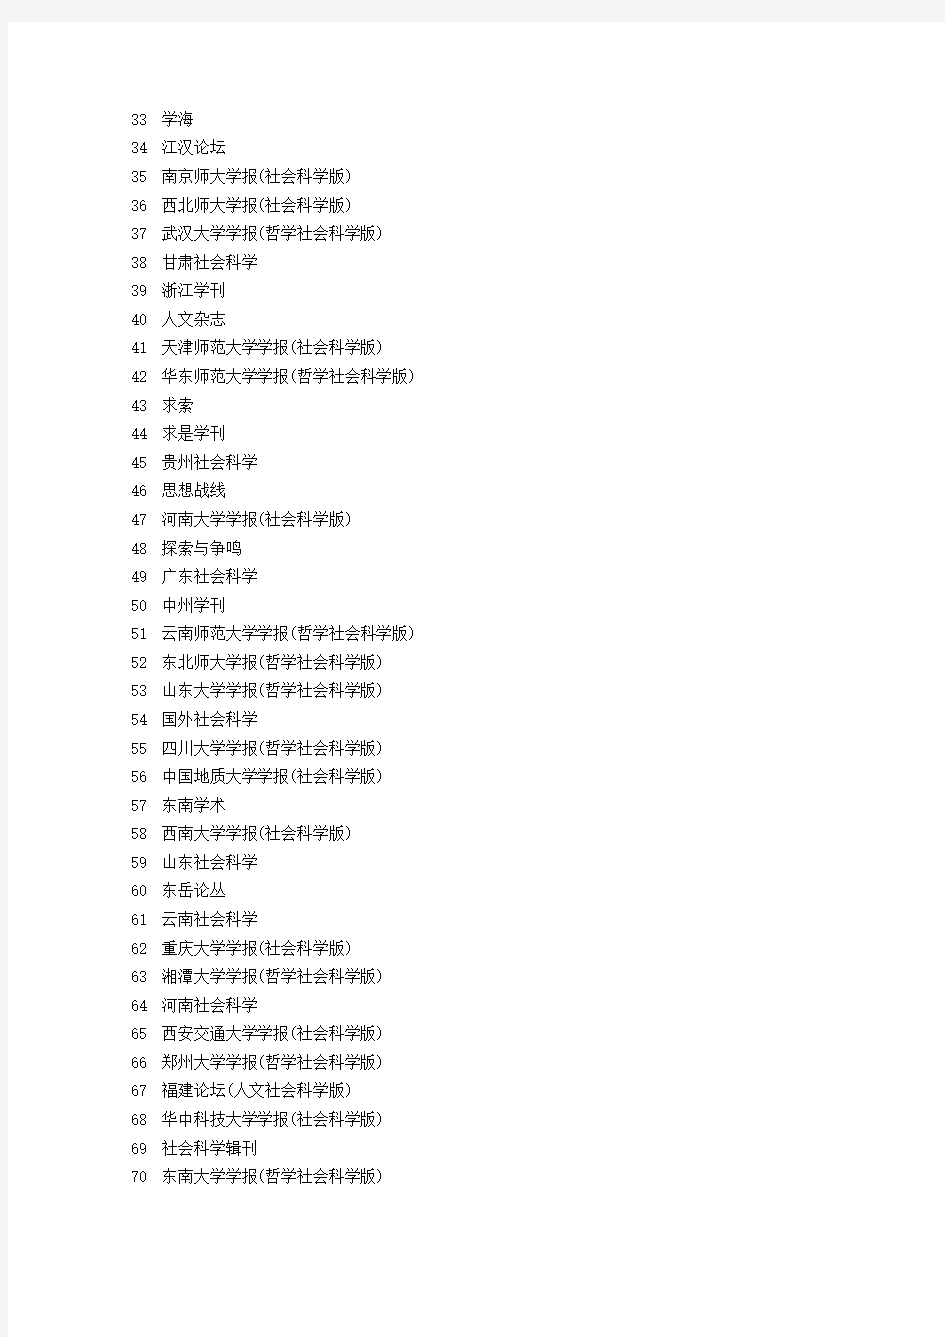 中文核心期刊目录(2014年版)北大核心目录(第七版)最新版